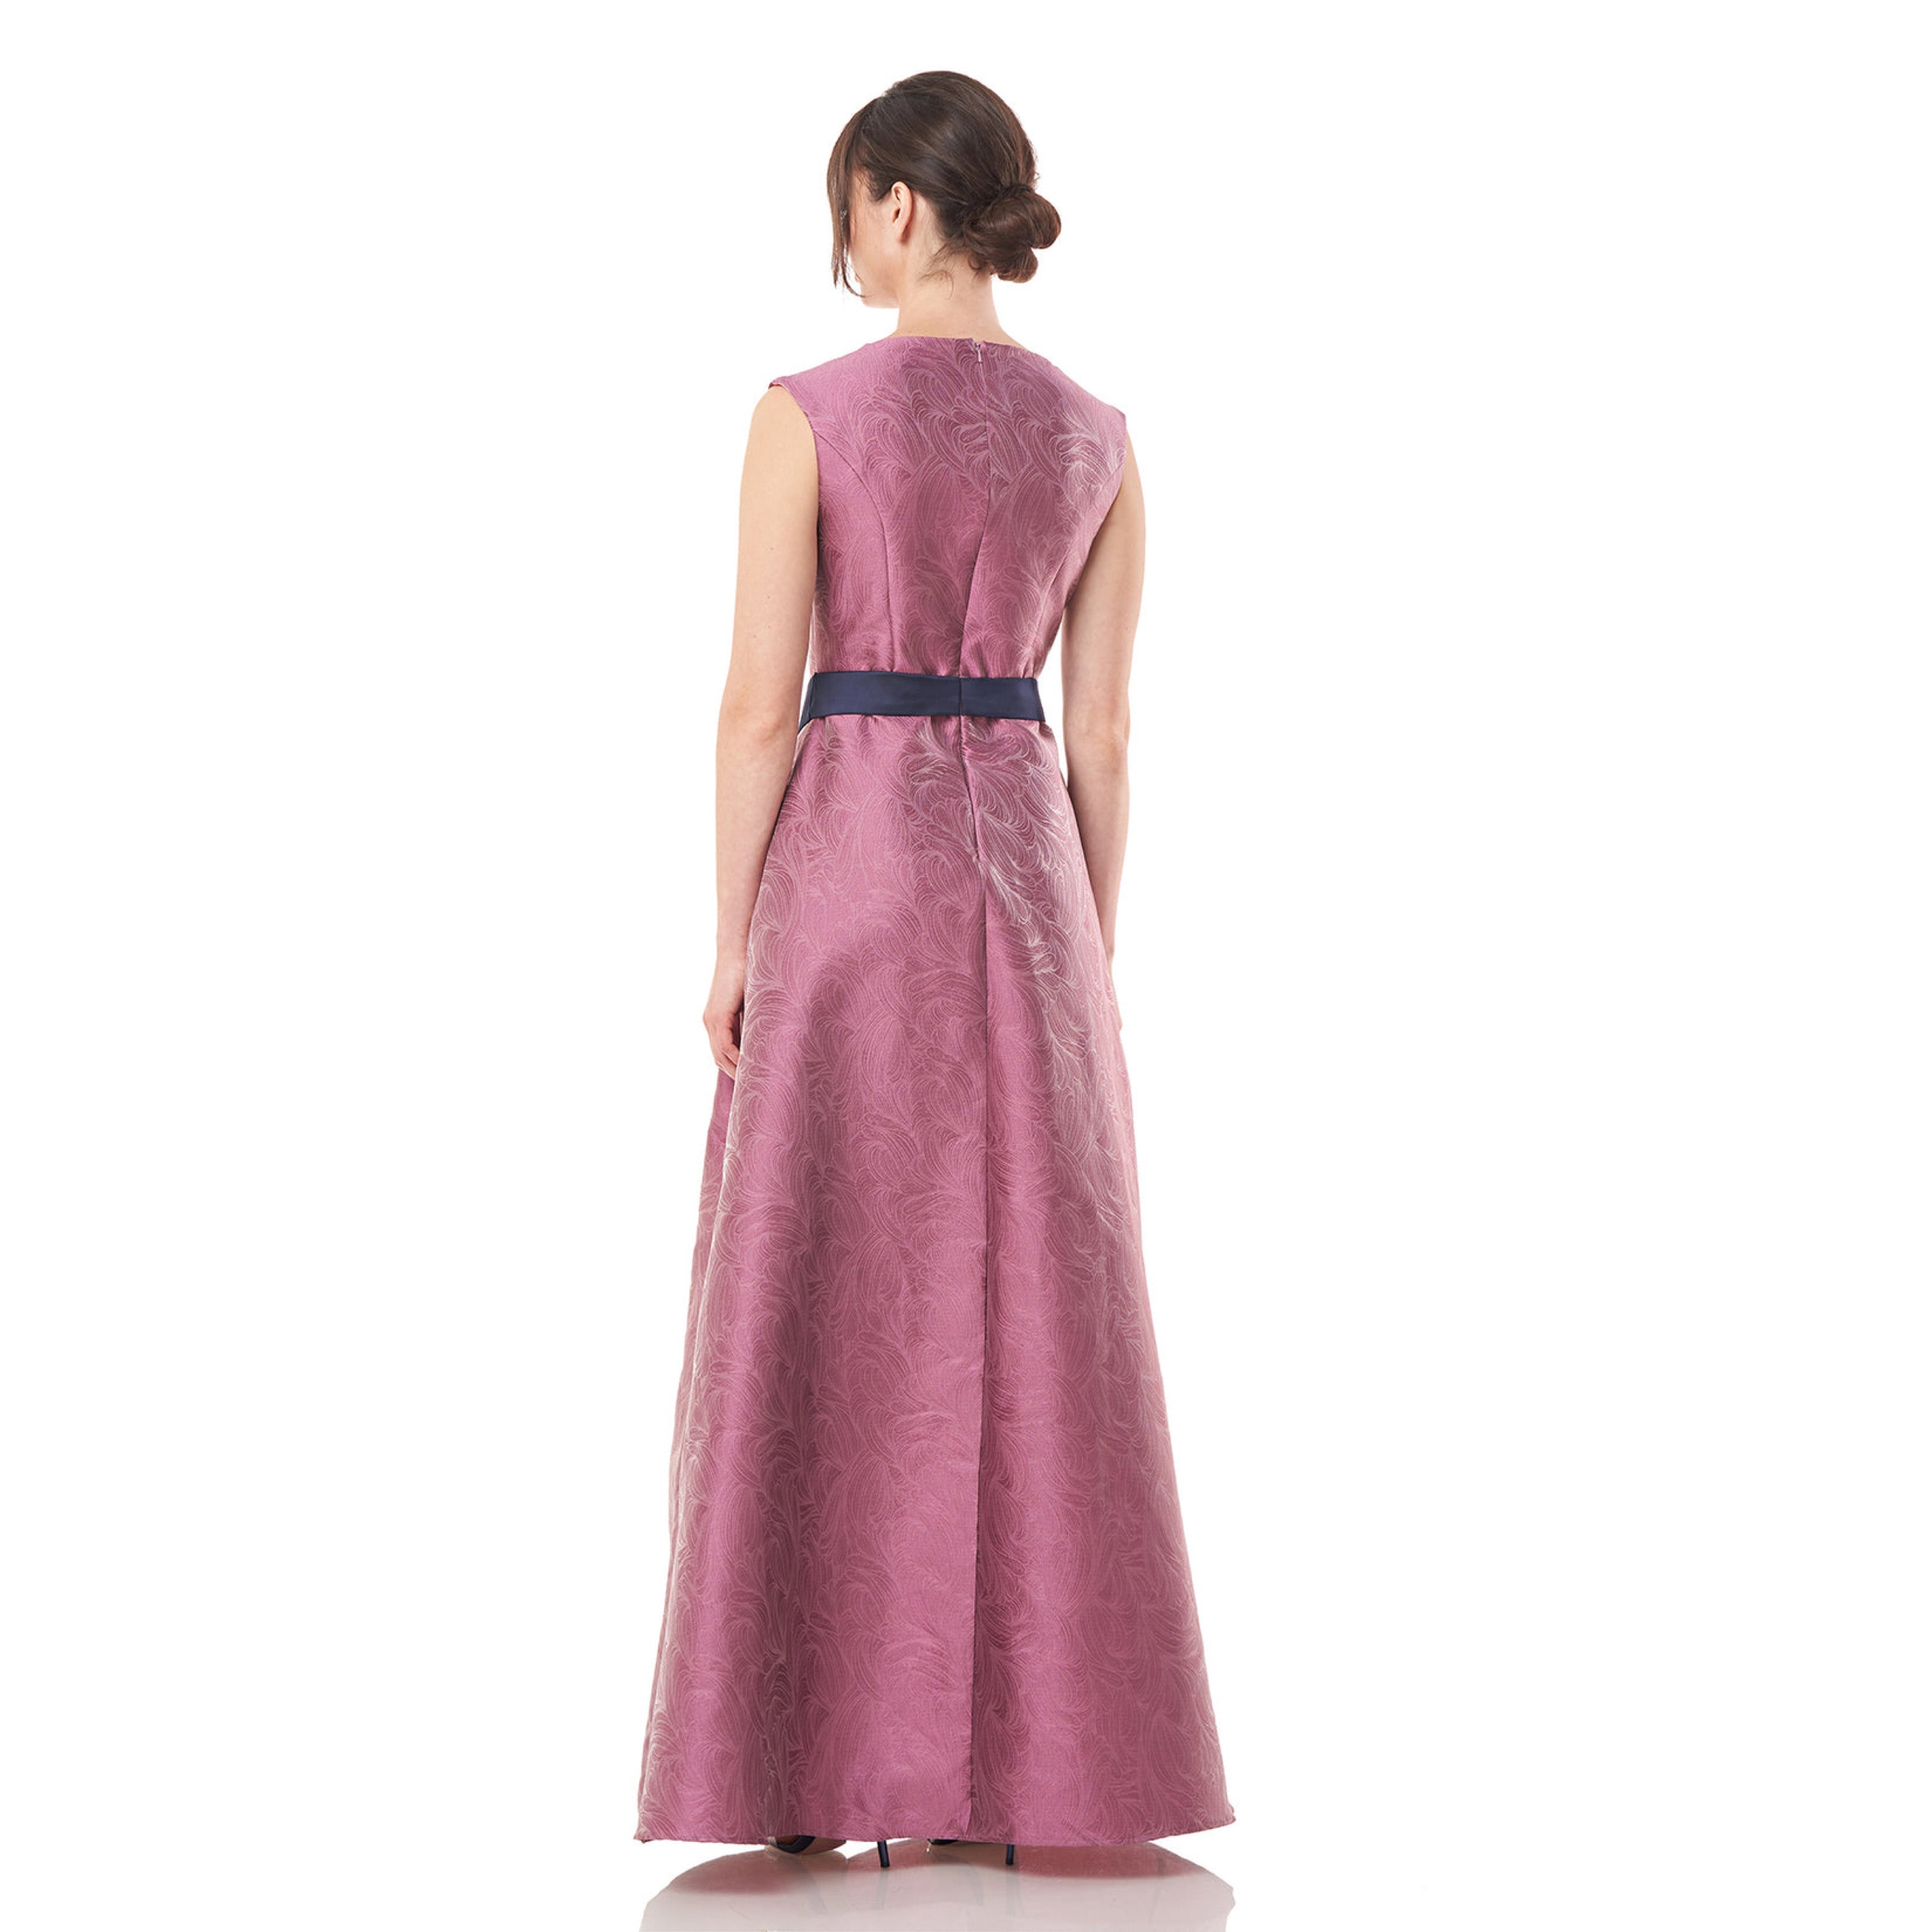 Kay Unger mauve & navy walkthrough dress, size 6